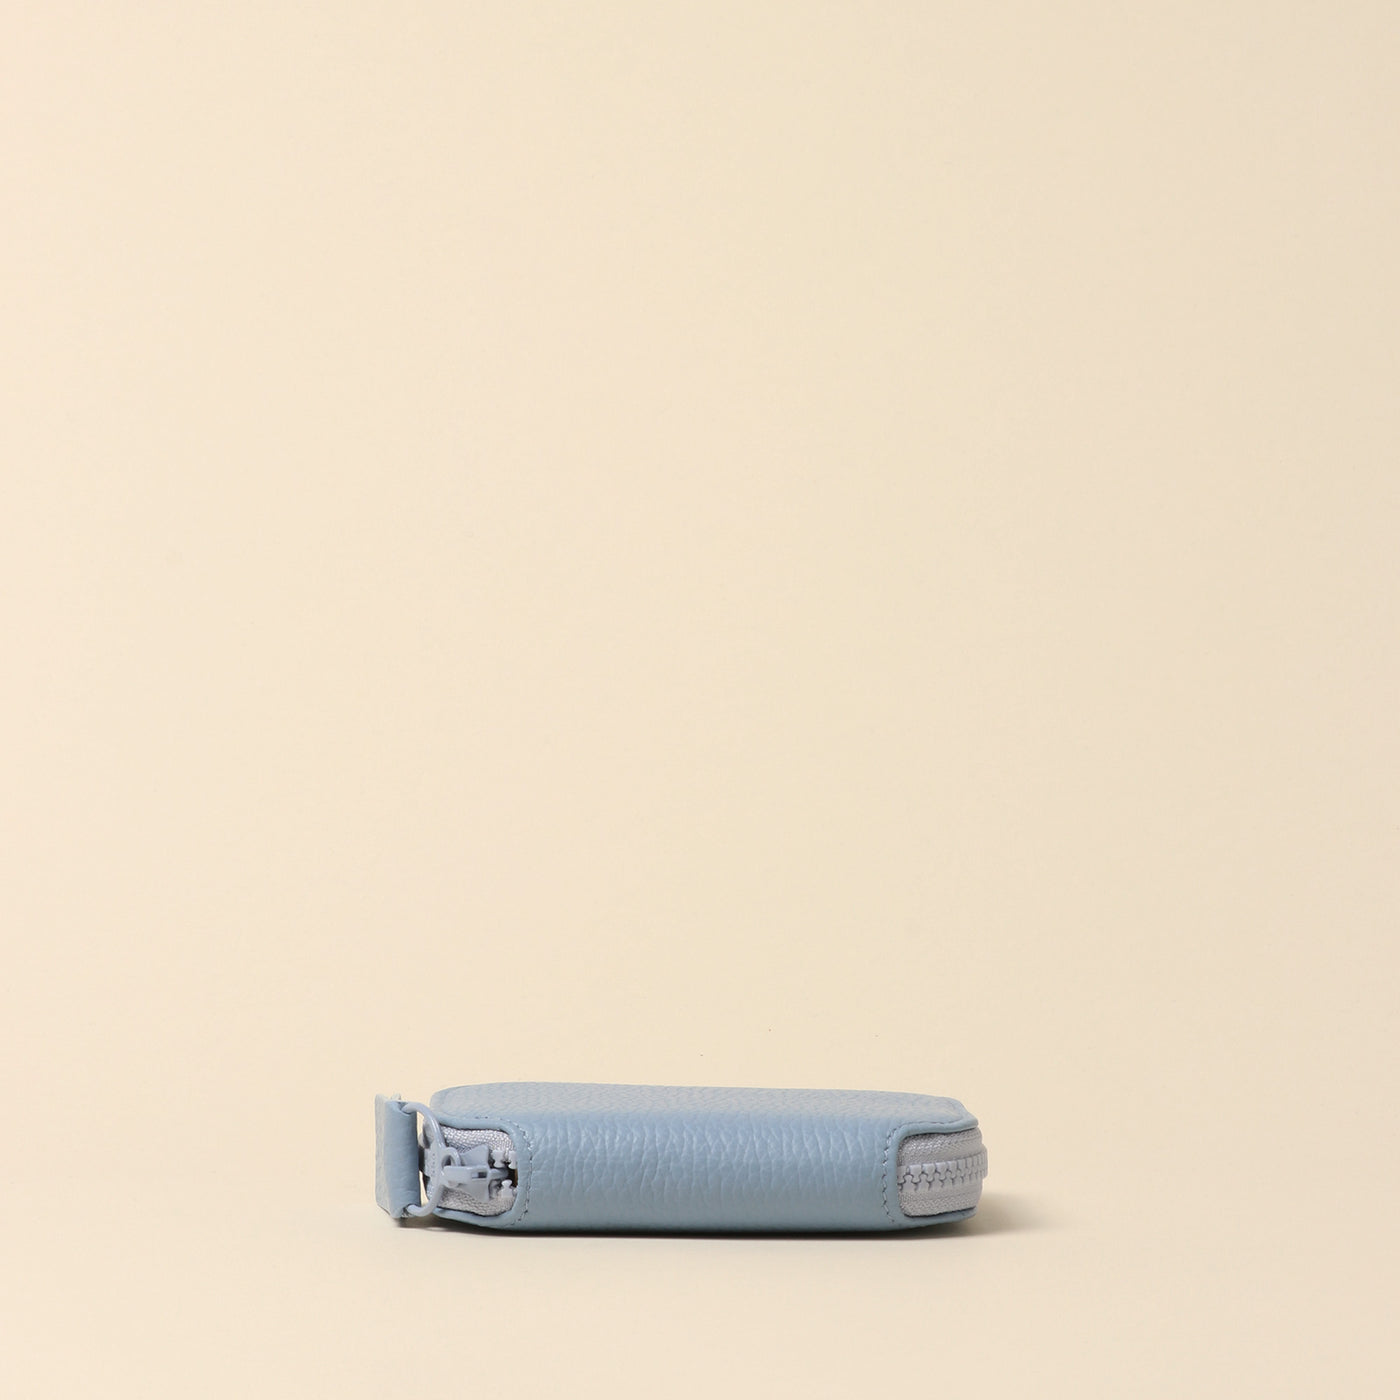 ＜itten-itten > Round Mini Wallet / Oak